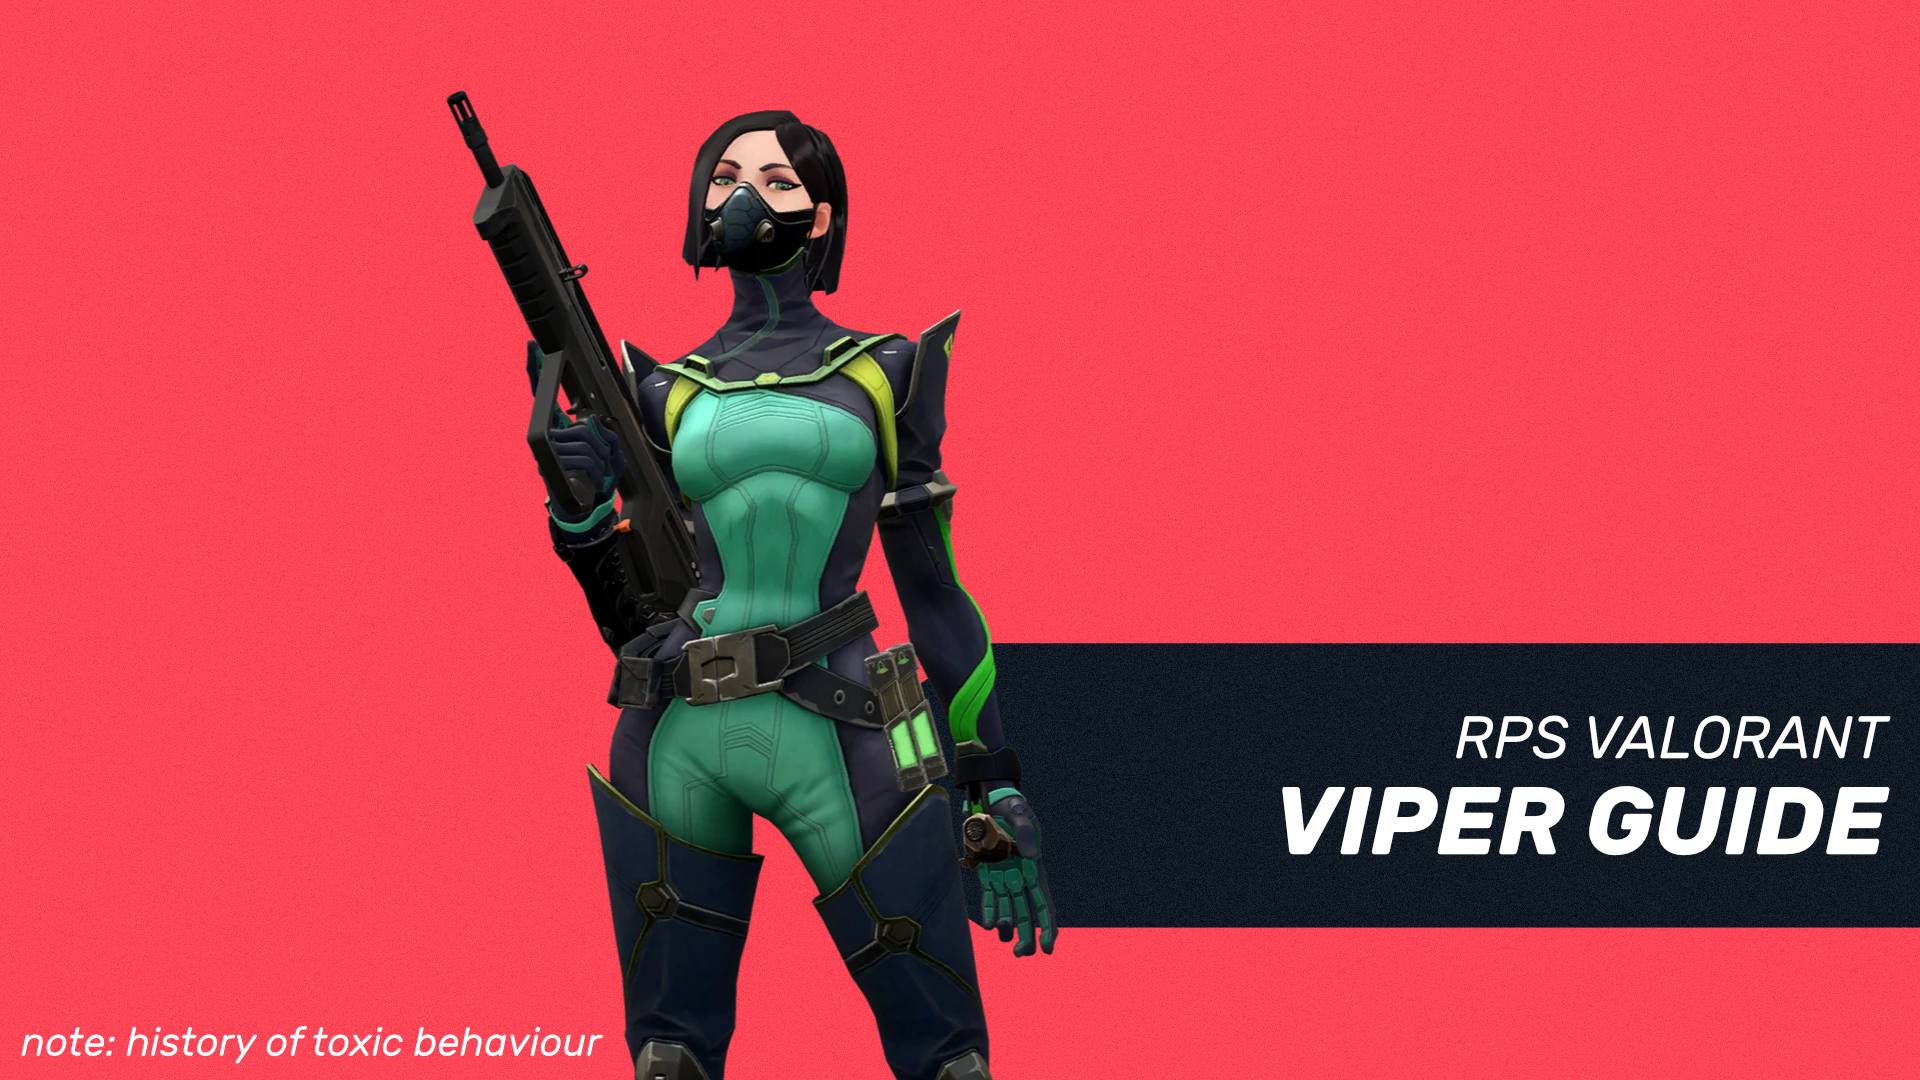 viper abilities valorant